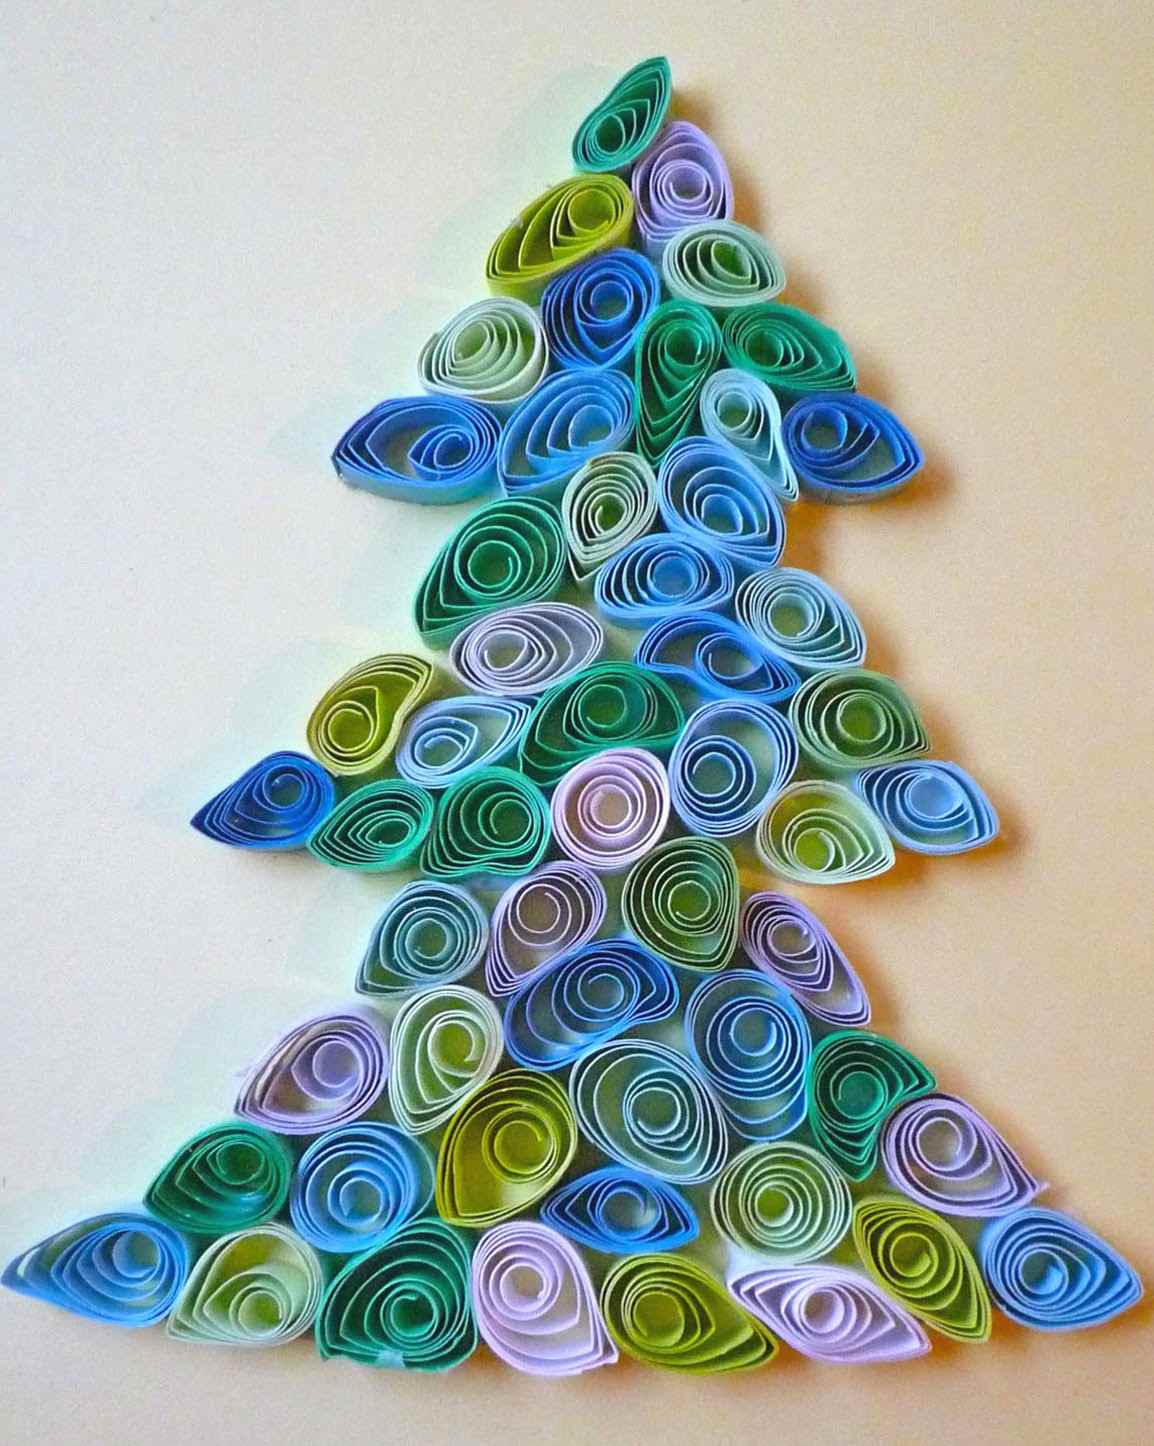 egy példa egy ragyogó karácsonyfa létrehozására kartonból